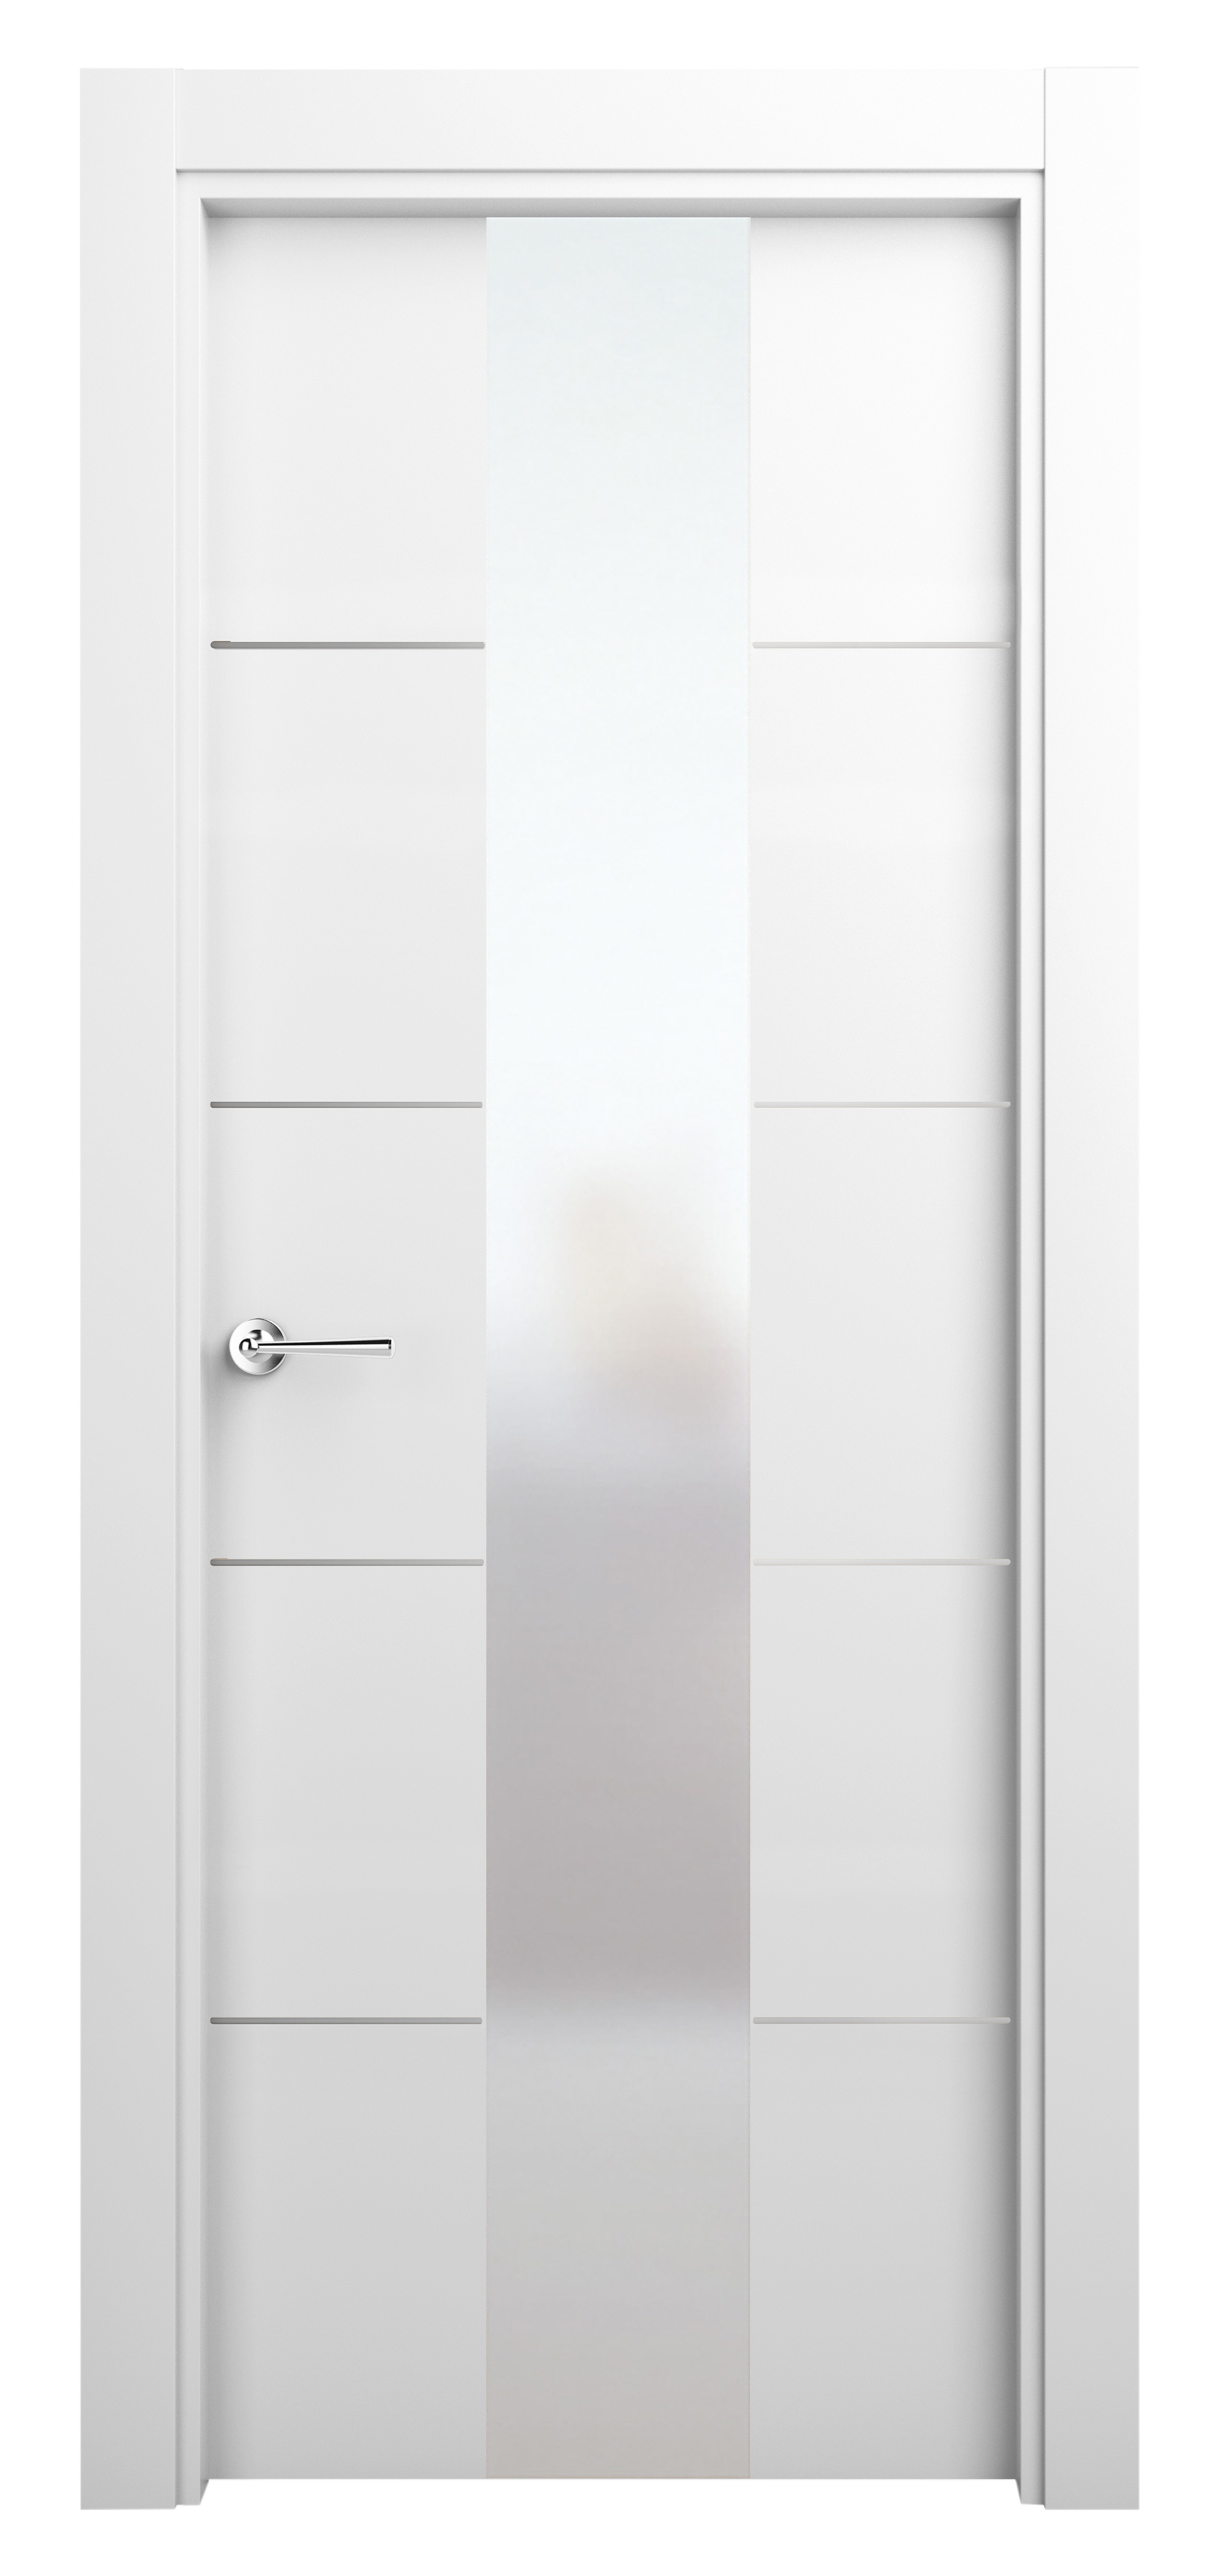 Puerta abatible paris blanca premium con cristal blanco izquierda de 82.5 cm